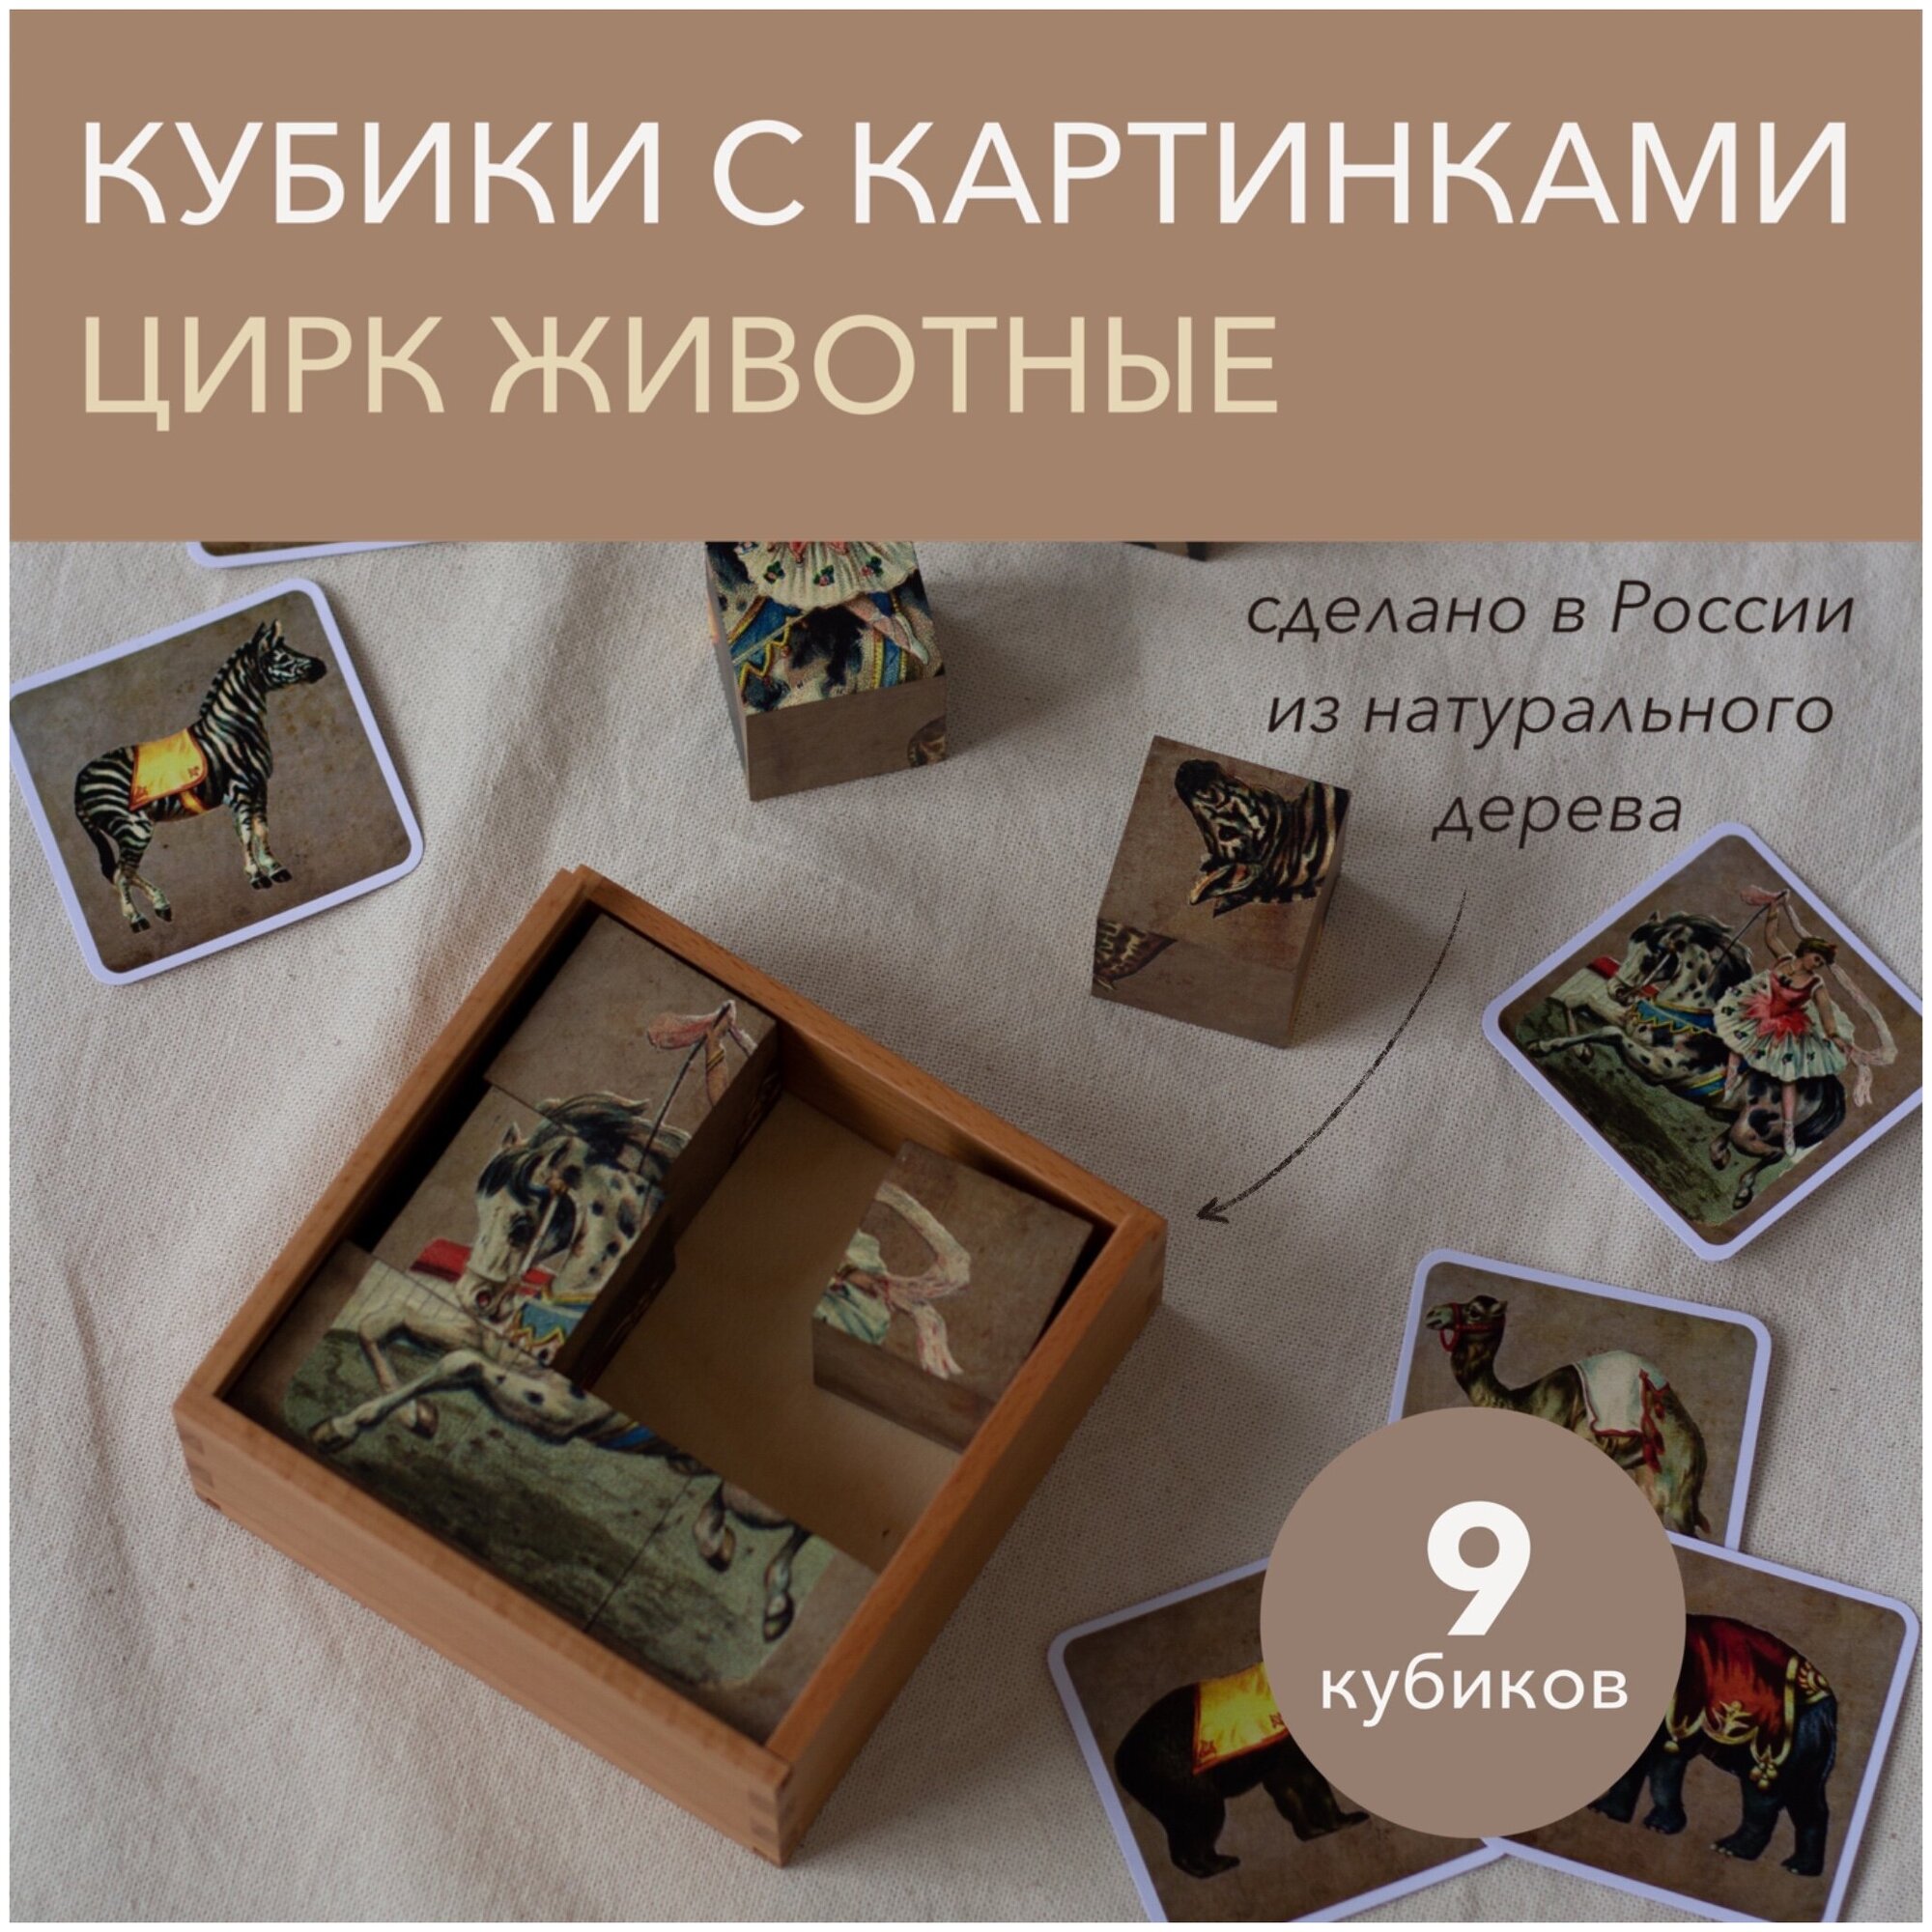 Кубики с картинками "Цирк Животные" (9 кубиков в деревянной коробочке)